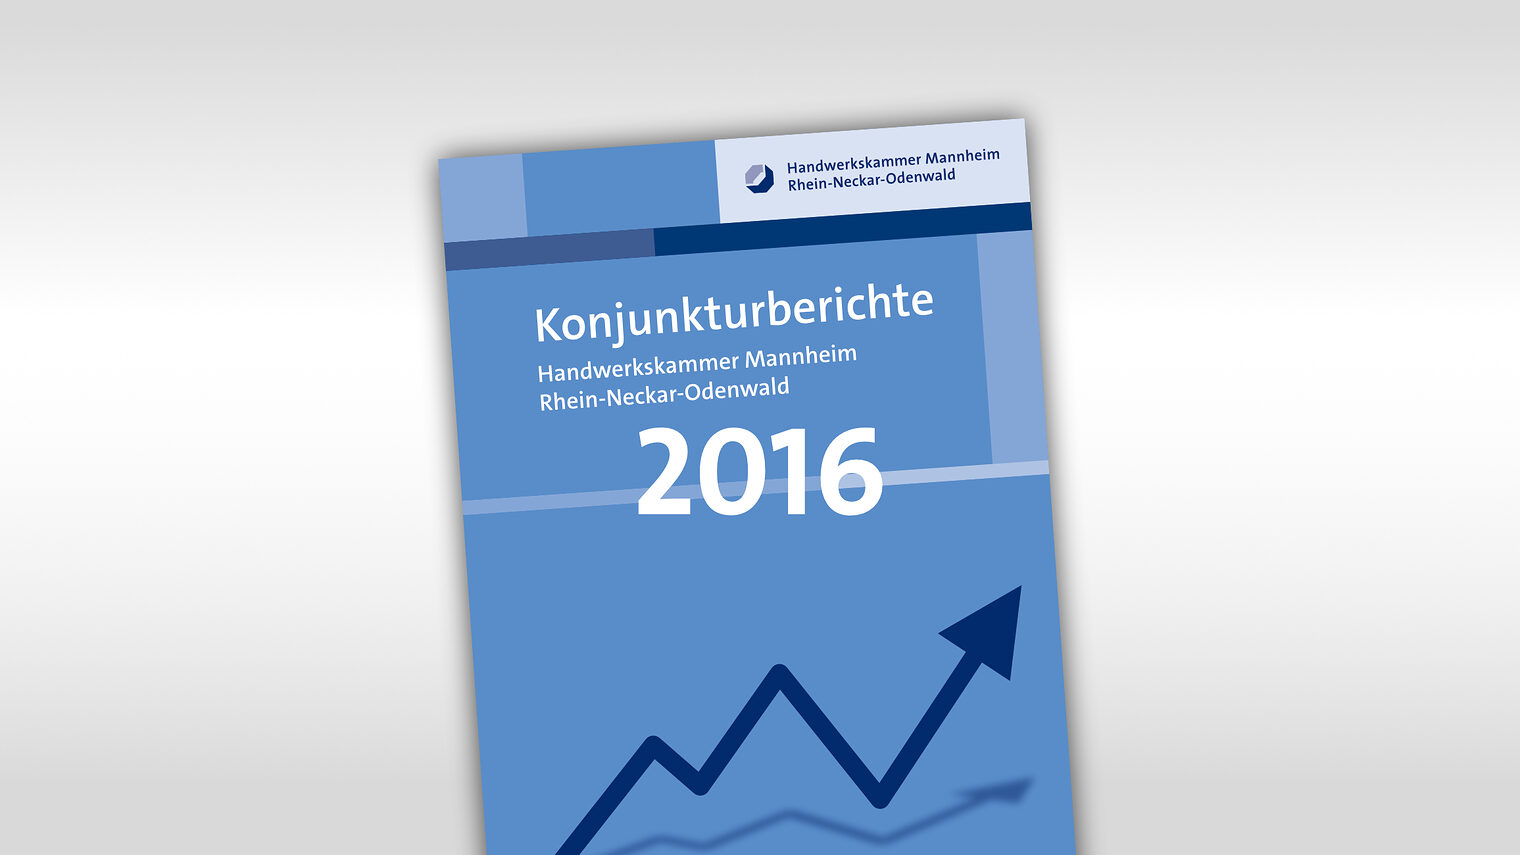 Titelmotiv Konjunkturbericht plus Jahreszahl 2016